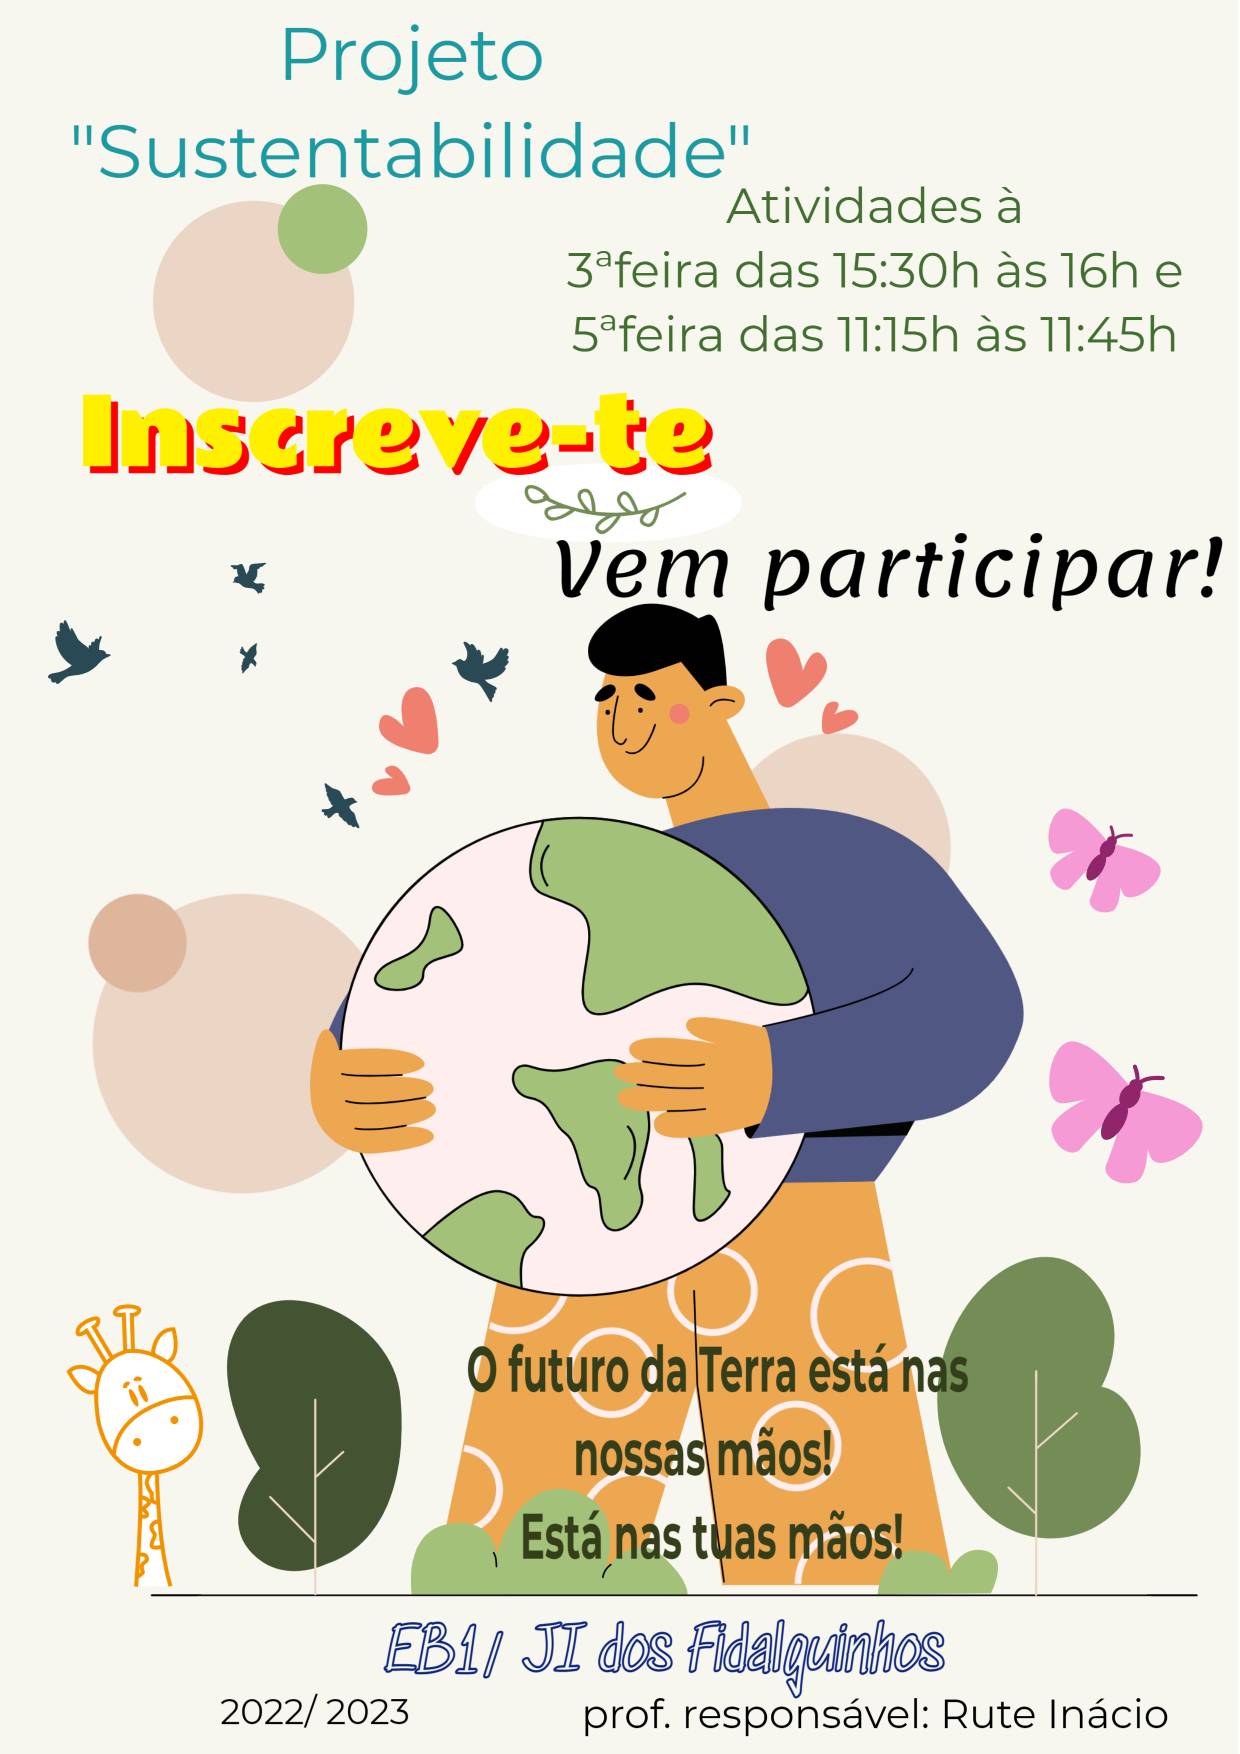 poster sustentabilidade eb1fidalguinhos